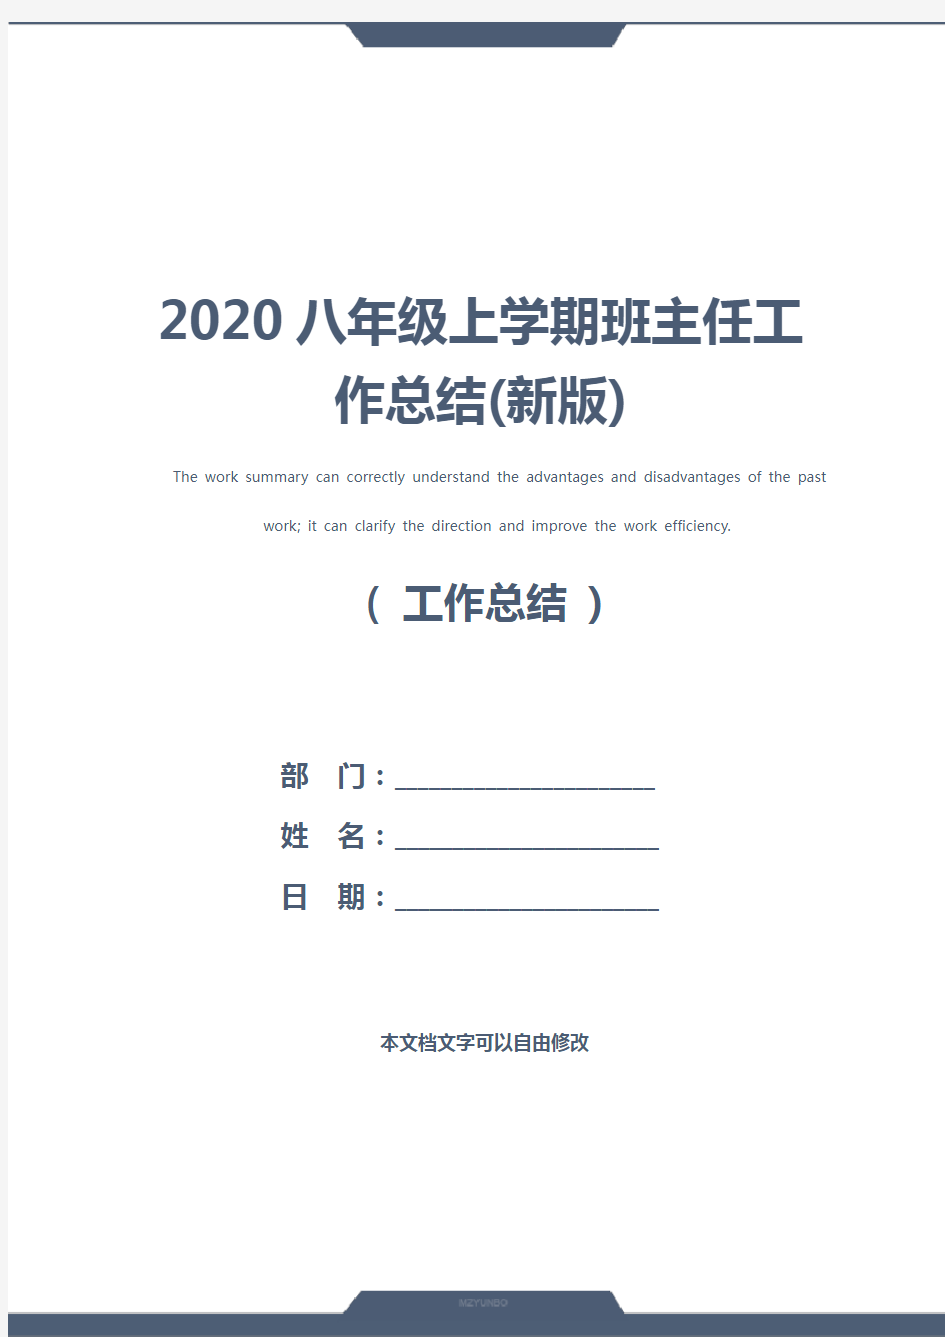 2020八年级上学期班主任工作总结(新版)